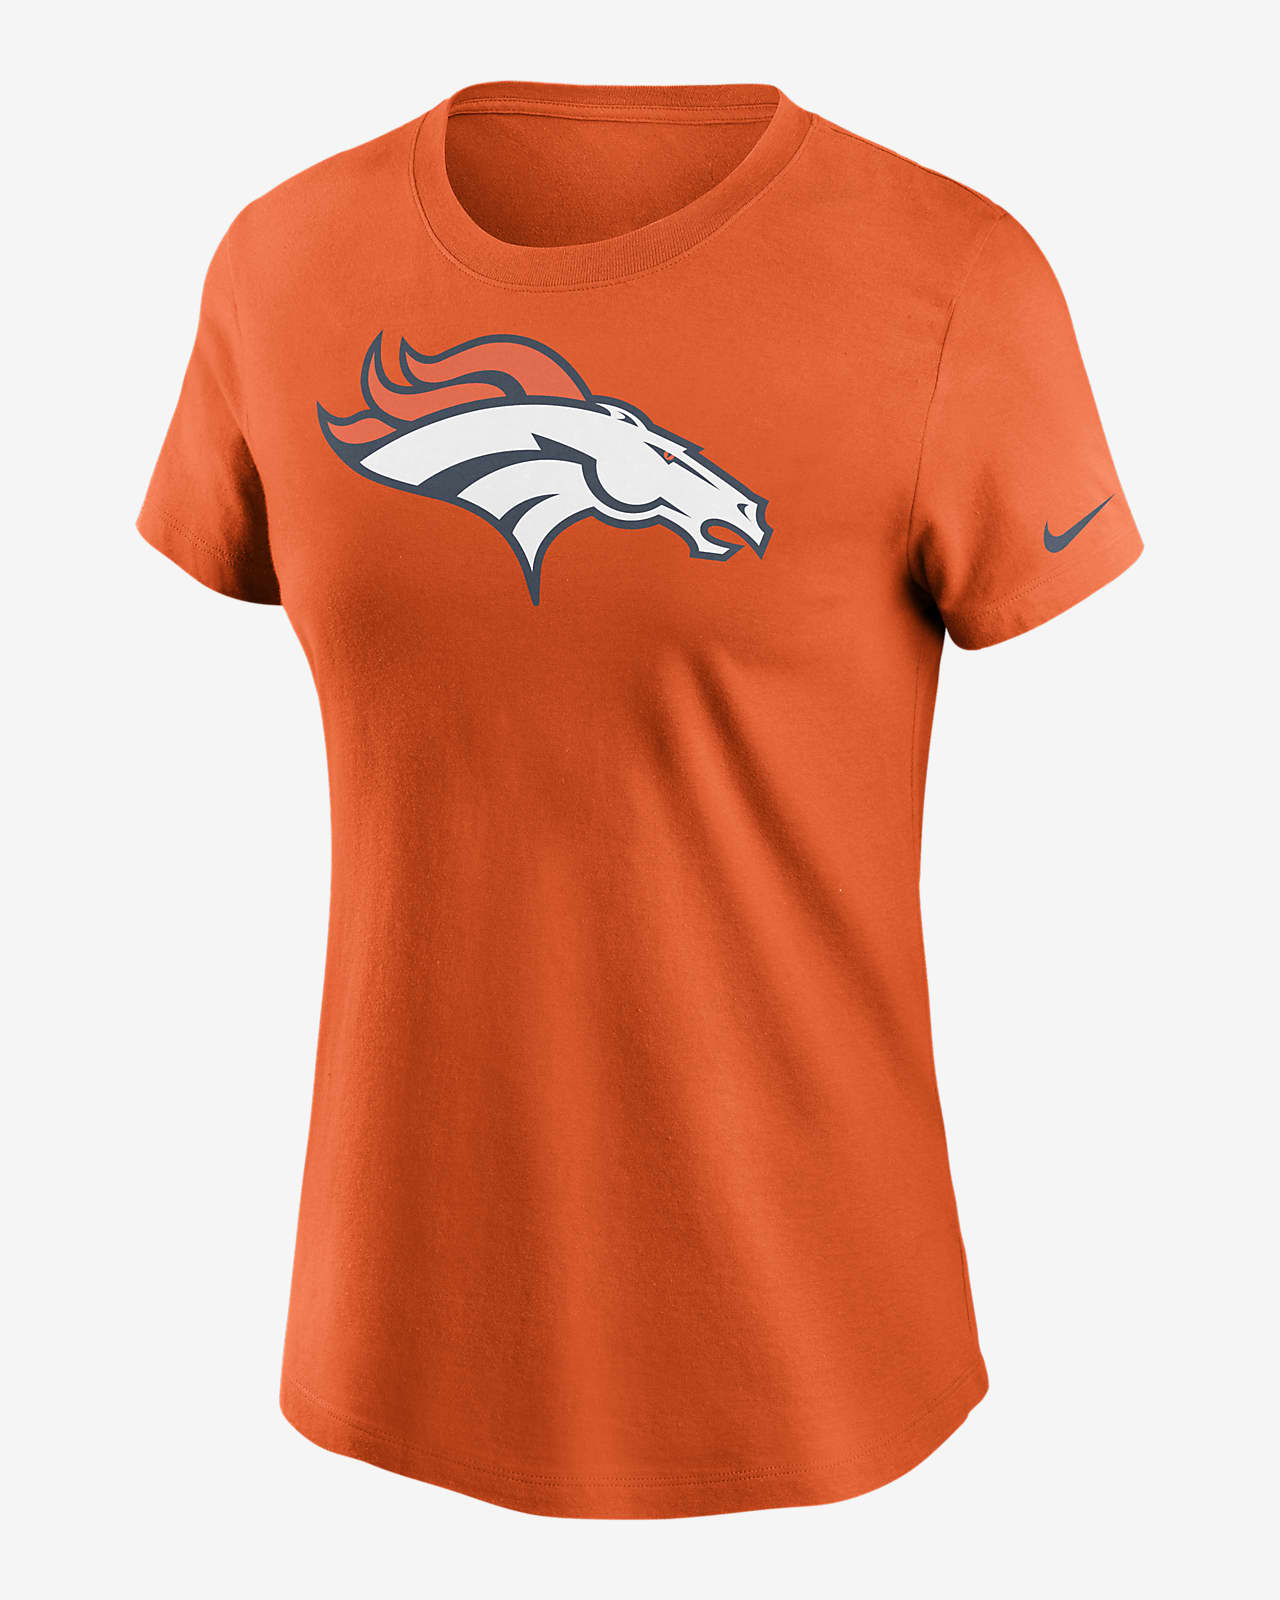 Playera para mujer Nike Logo Essential (NFL Denver Broncos).